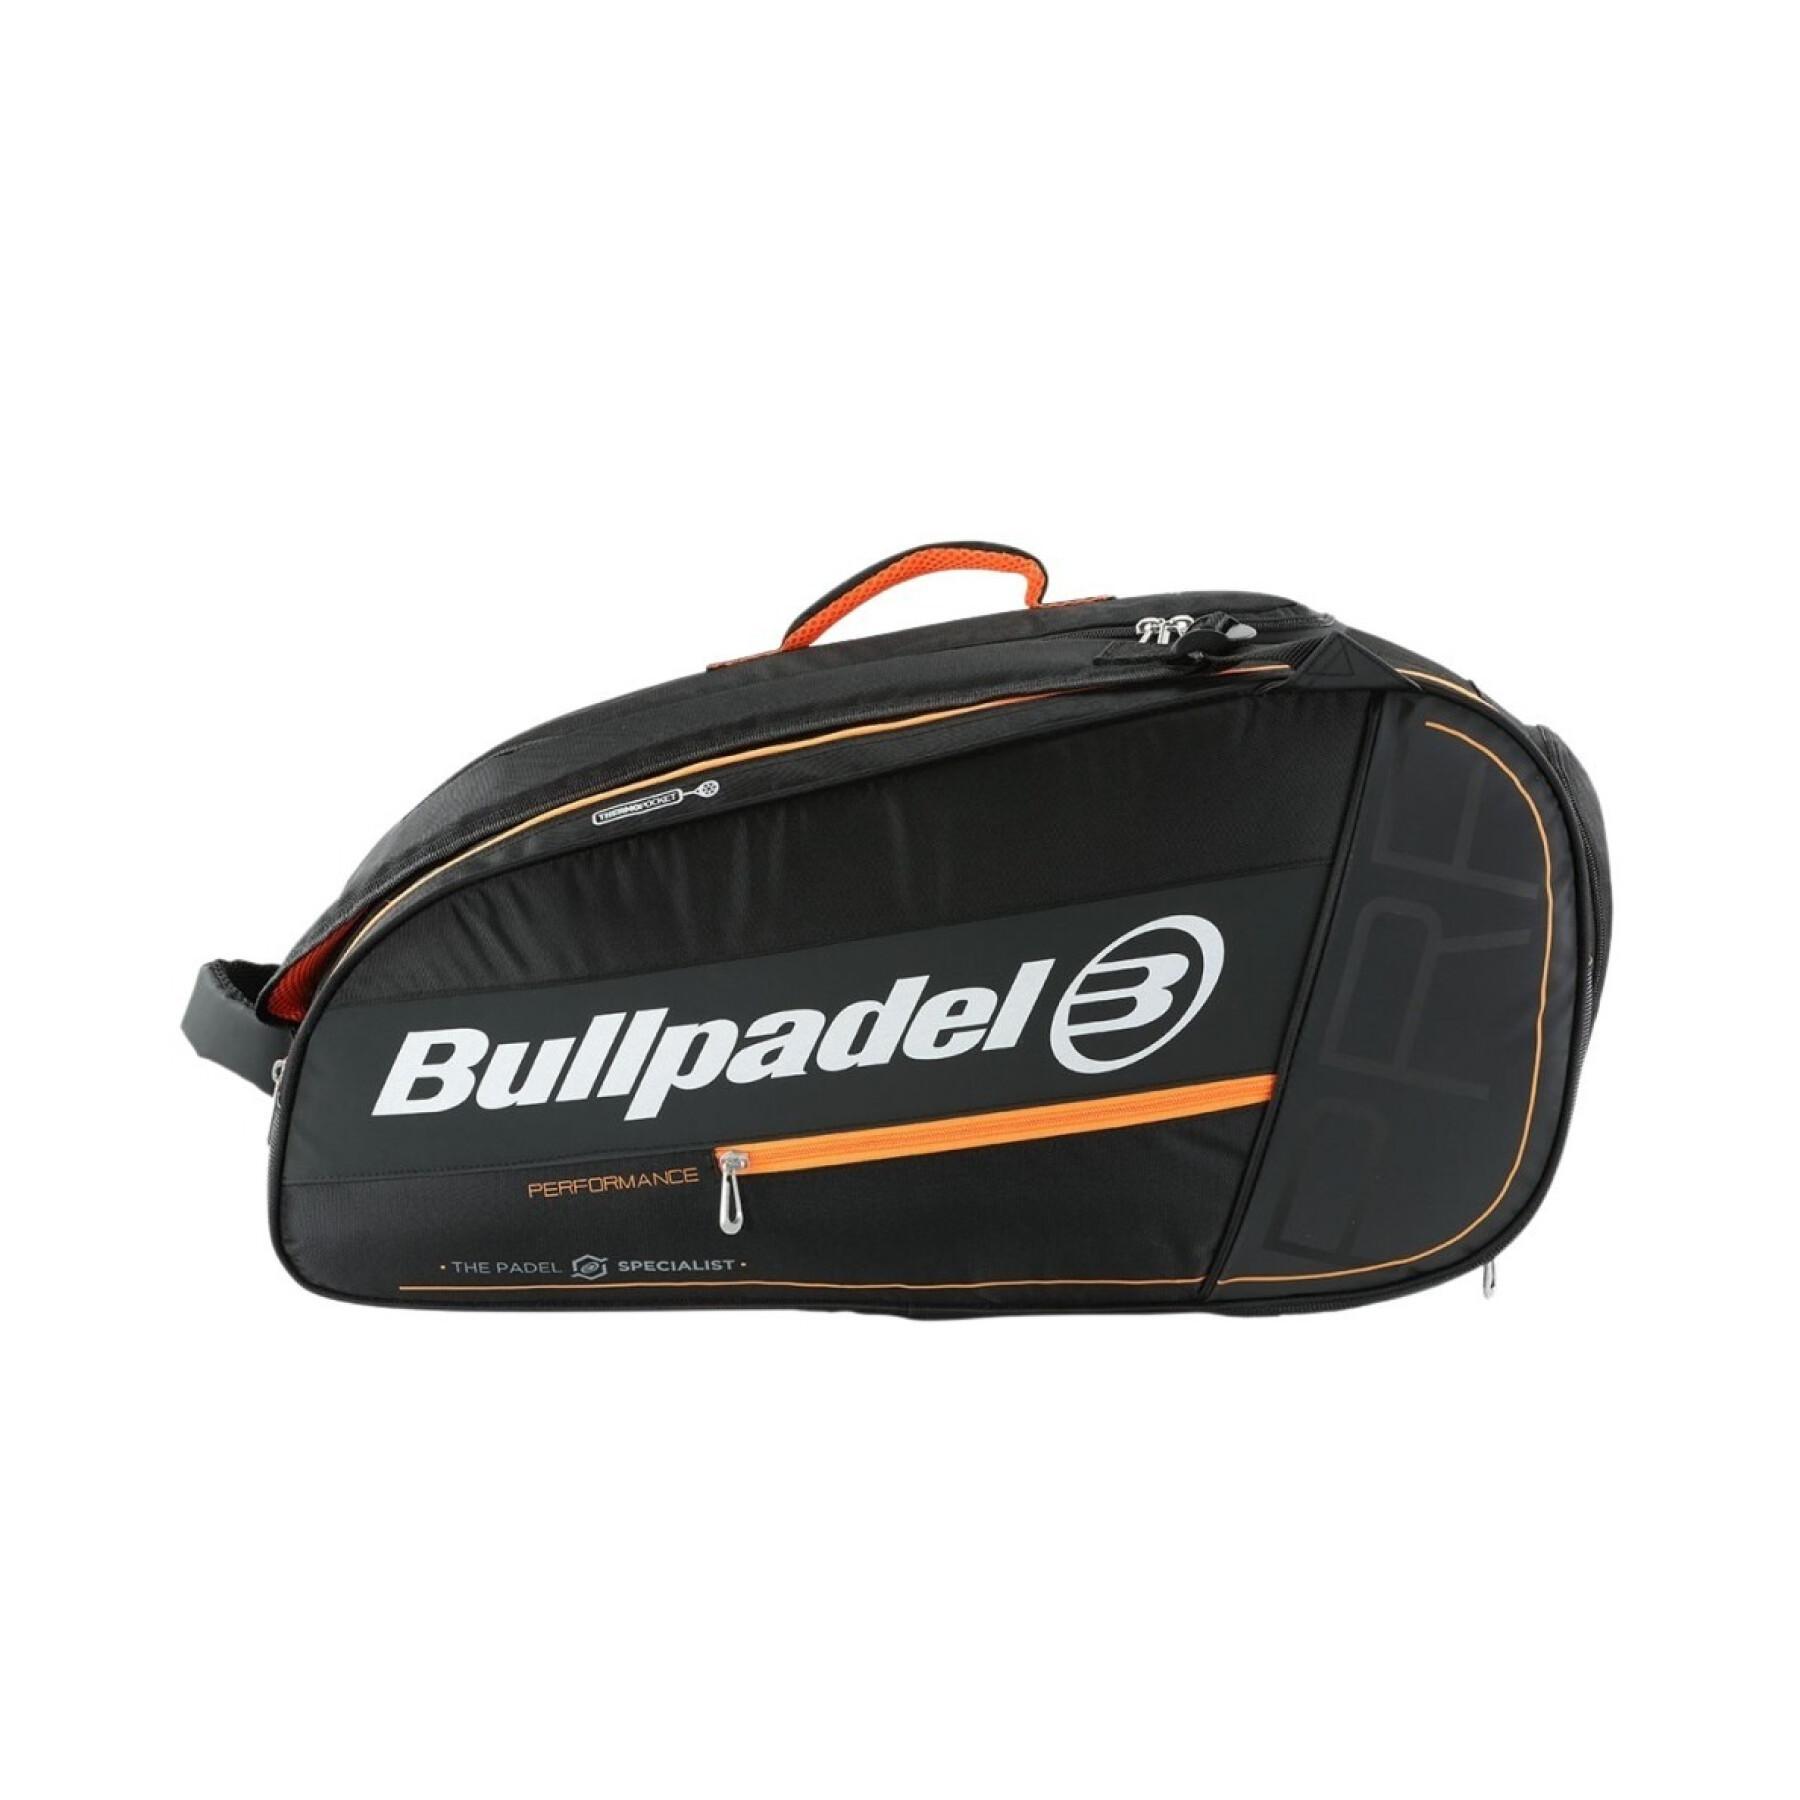 Paddle bag Bullpadel BPP-22014 Perf. 005